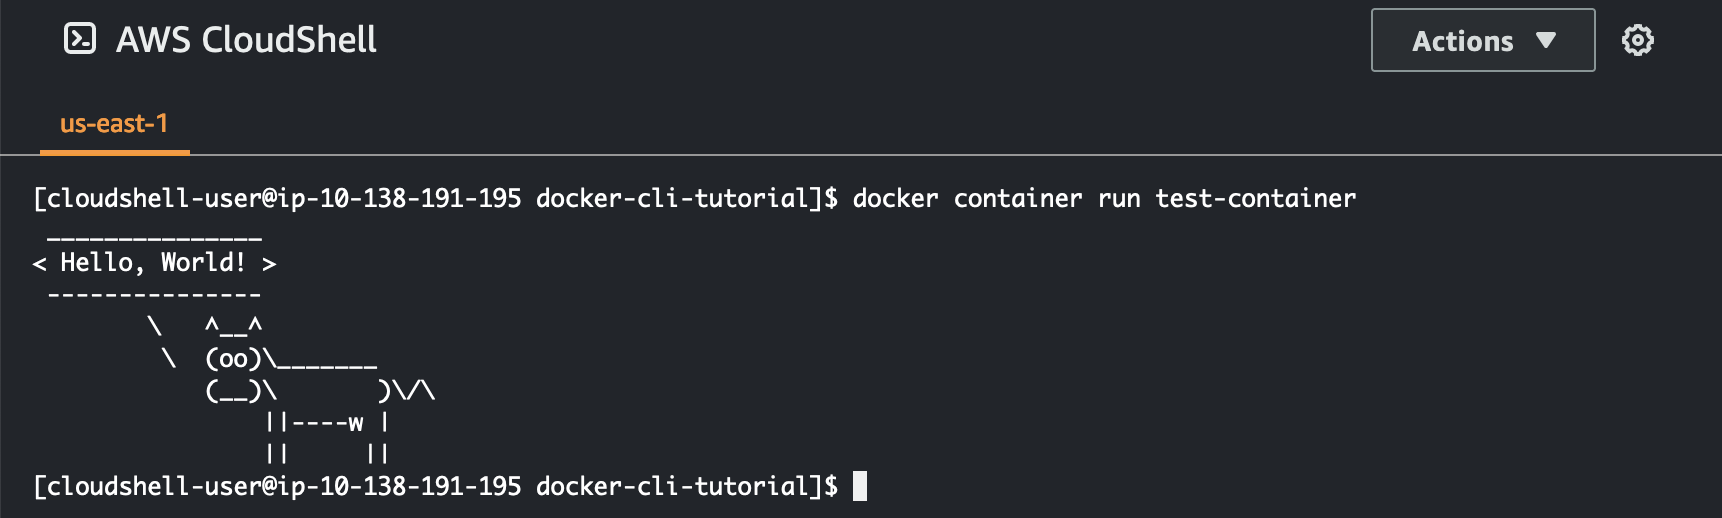 Immagine del comando run del contenitore docker all'interno AWS CloudShell